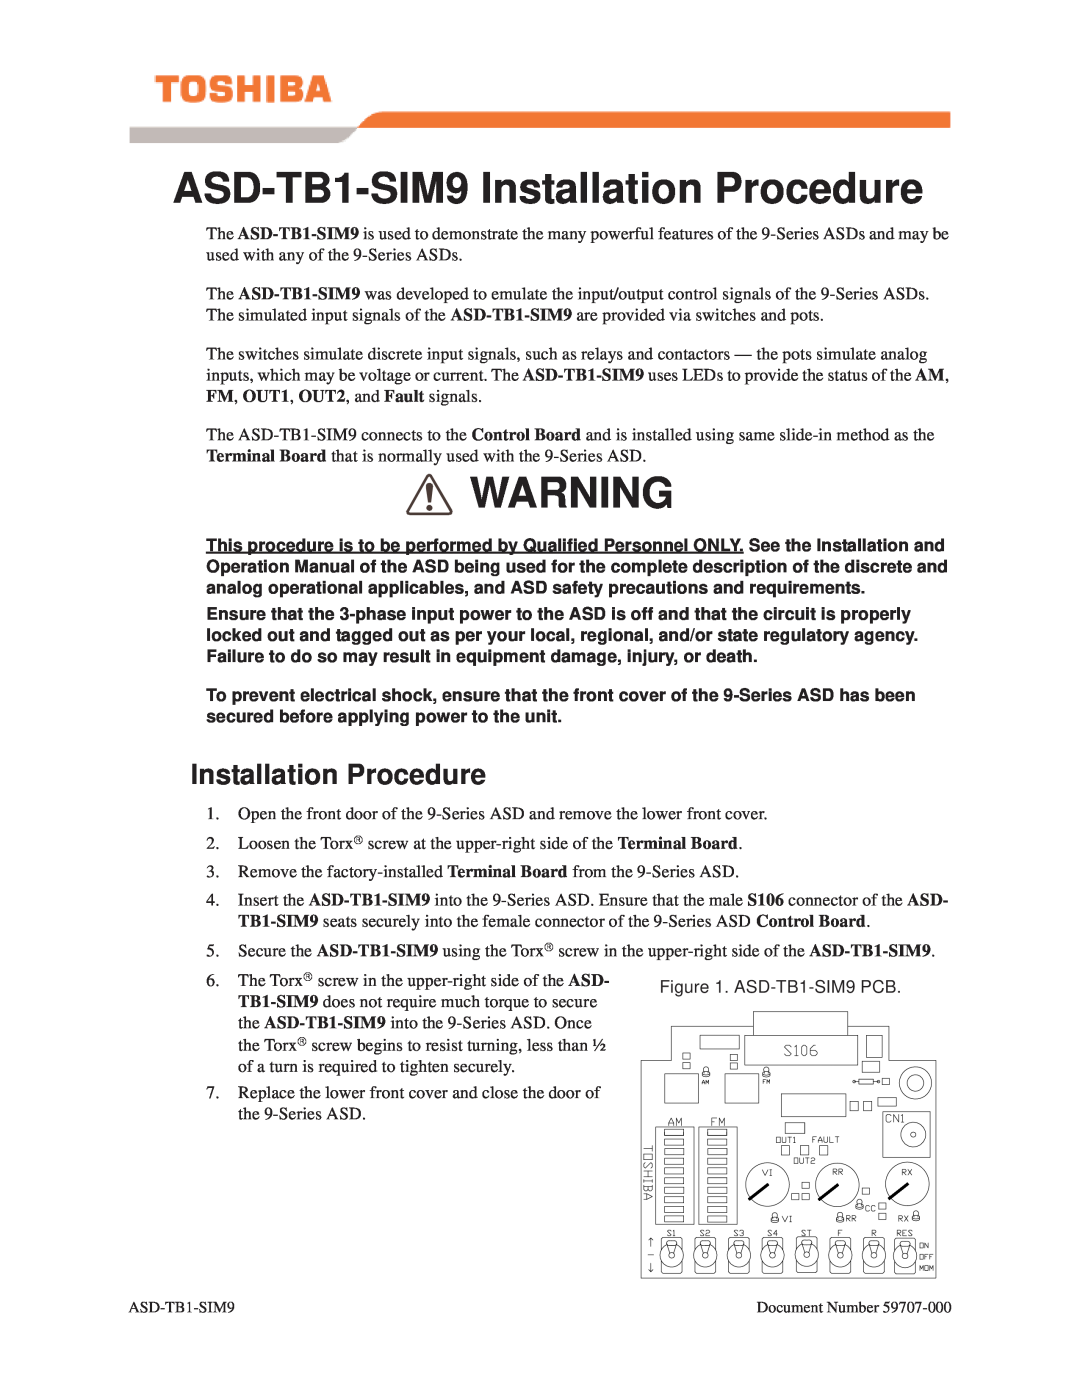 Toshiba operation manual ASD-TB1-SIM9 Installation Procedure, ASD-TB1-SIM9 PCB 